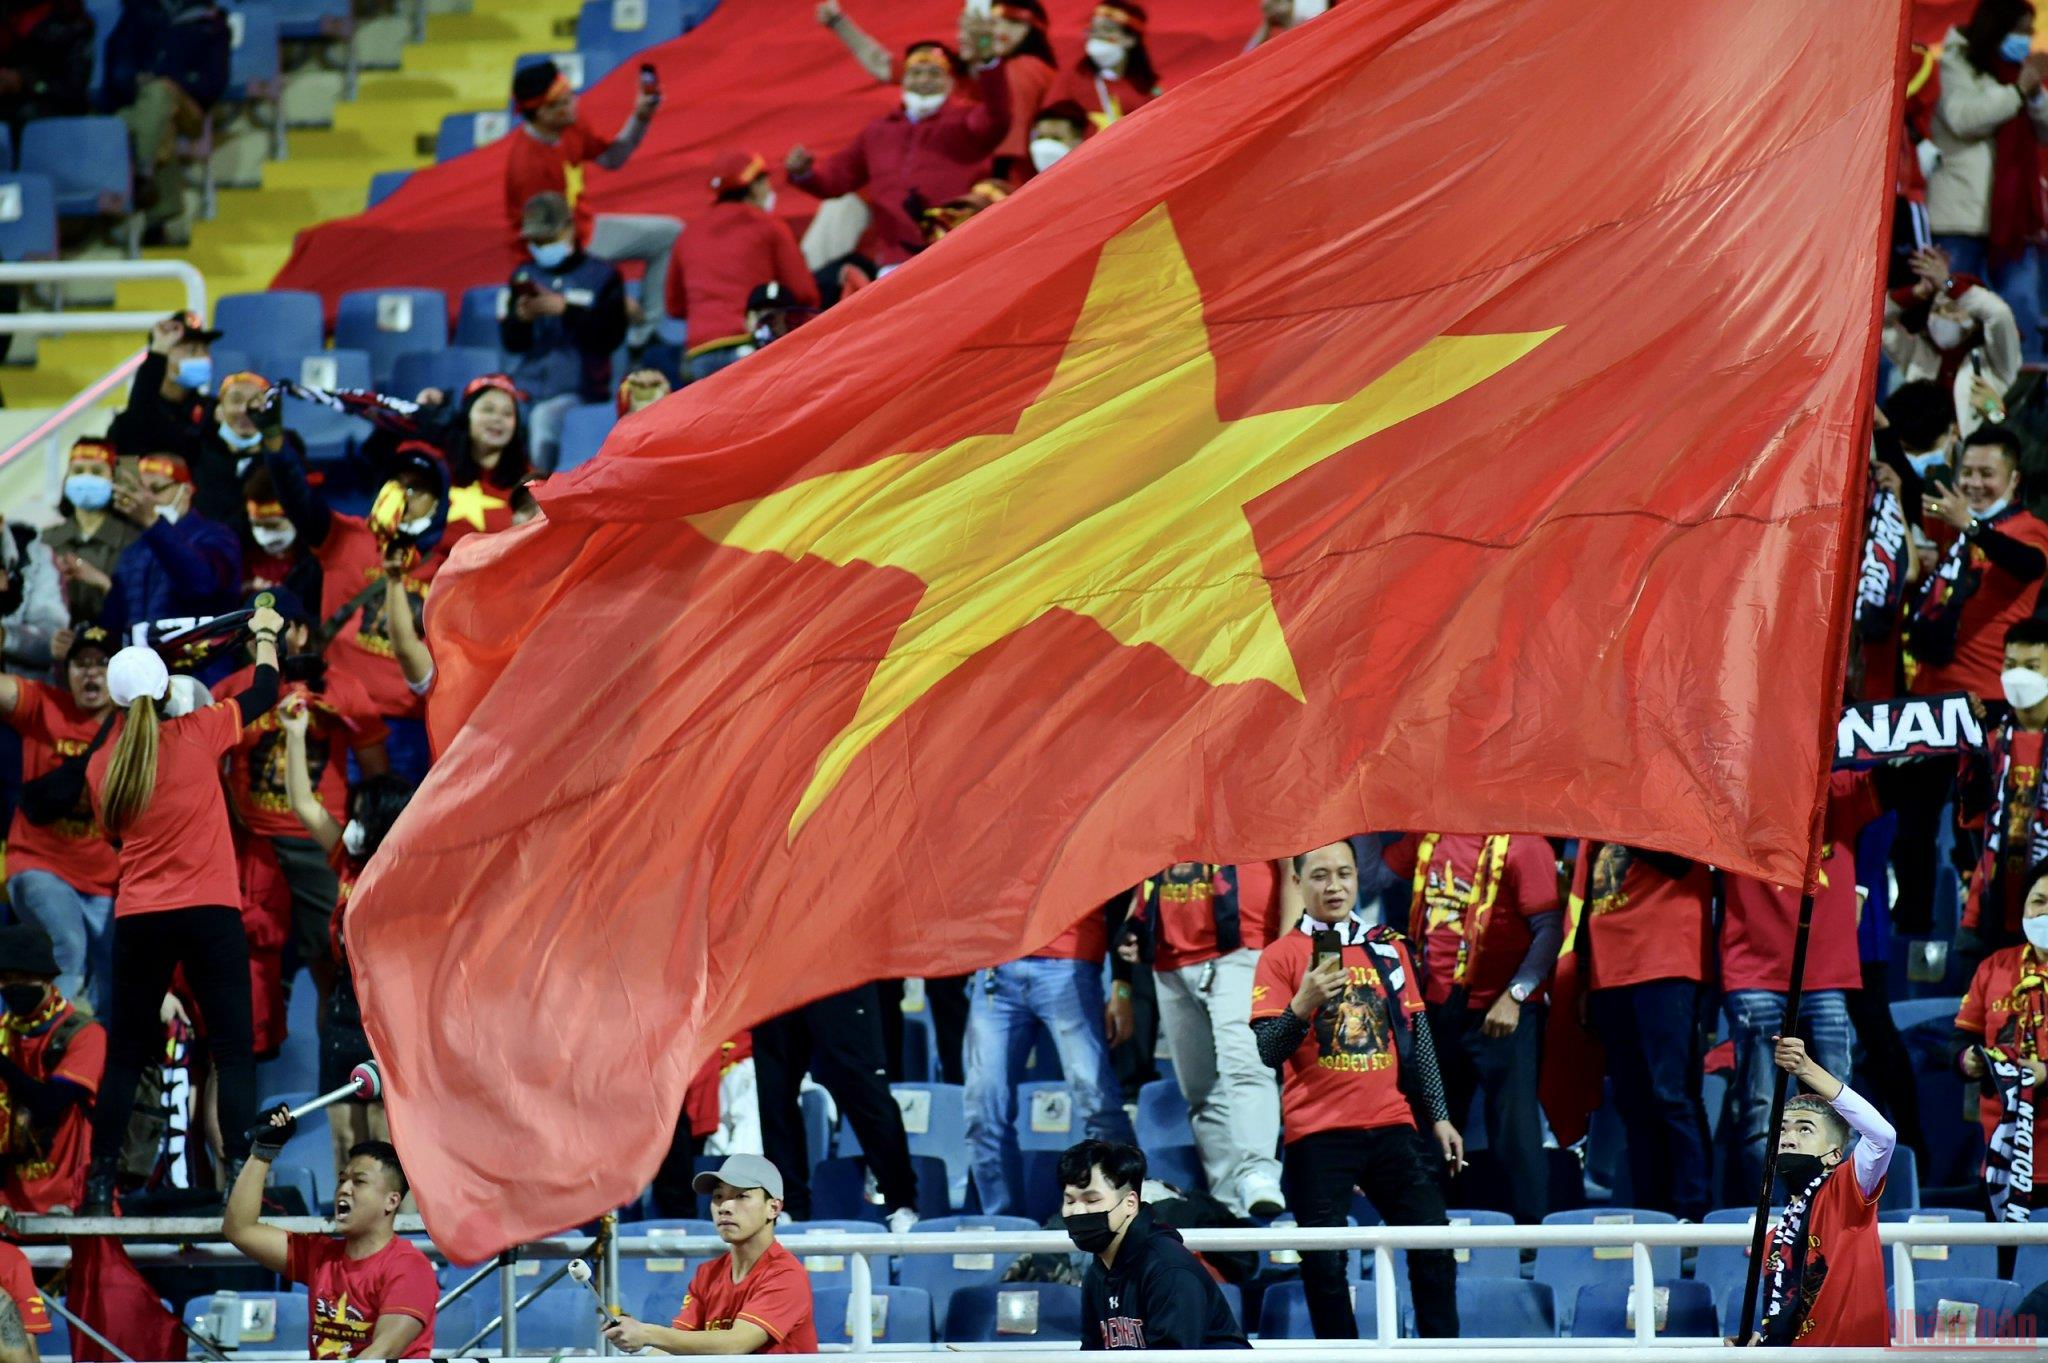 Đội tuyển Việt Nam chiến thắng 3-1 Trung Quốc trong ngày mùng 1 Tết